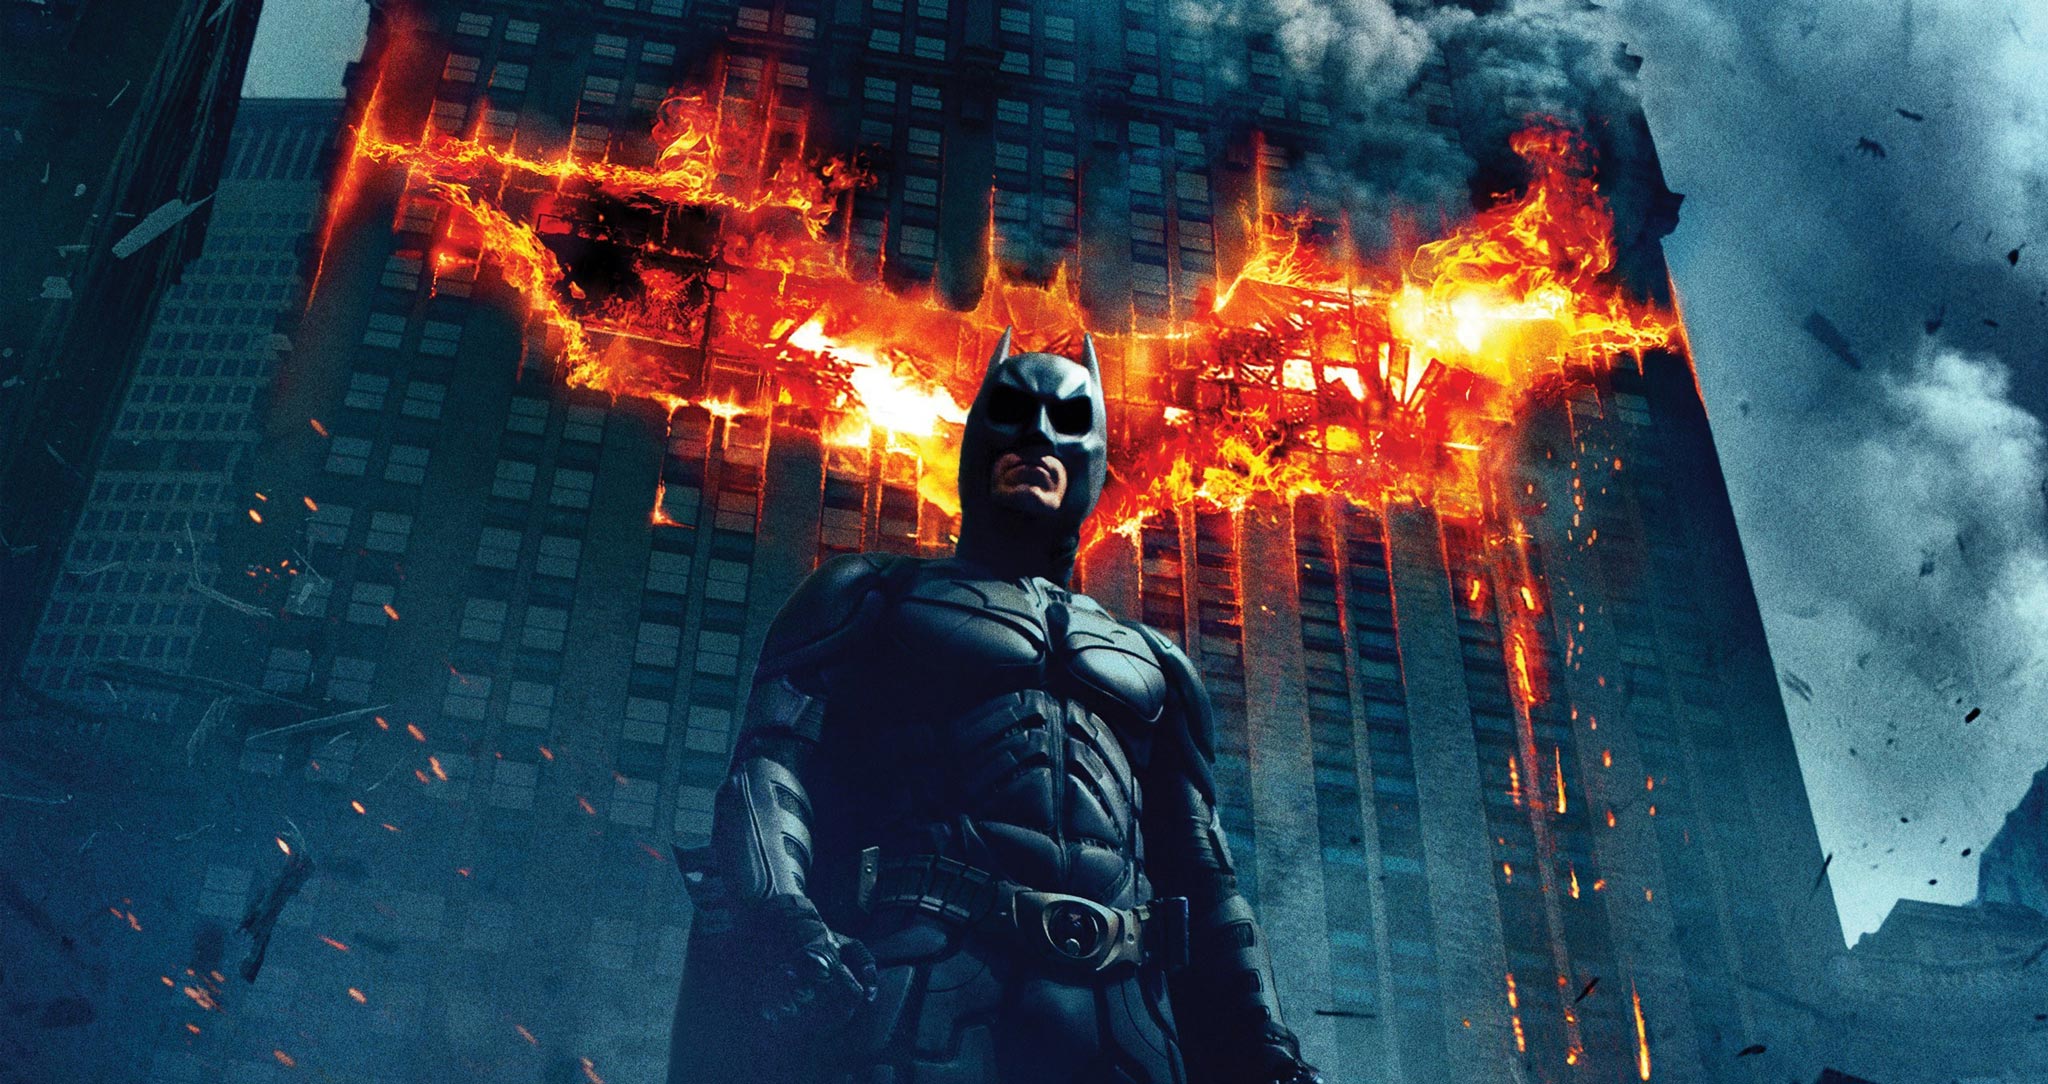 batman-the-dark-knight-movie-hd-wallpaper-2560x1600-3857conv - The Couch